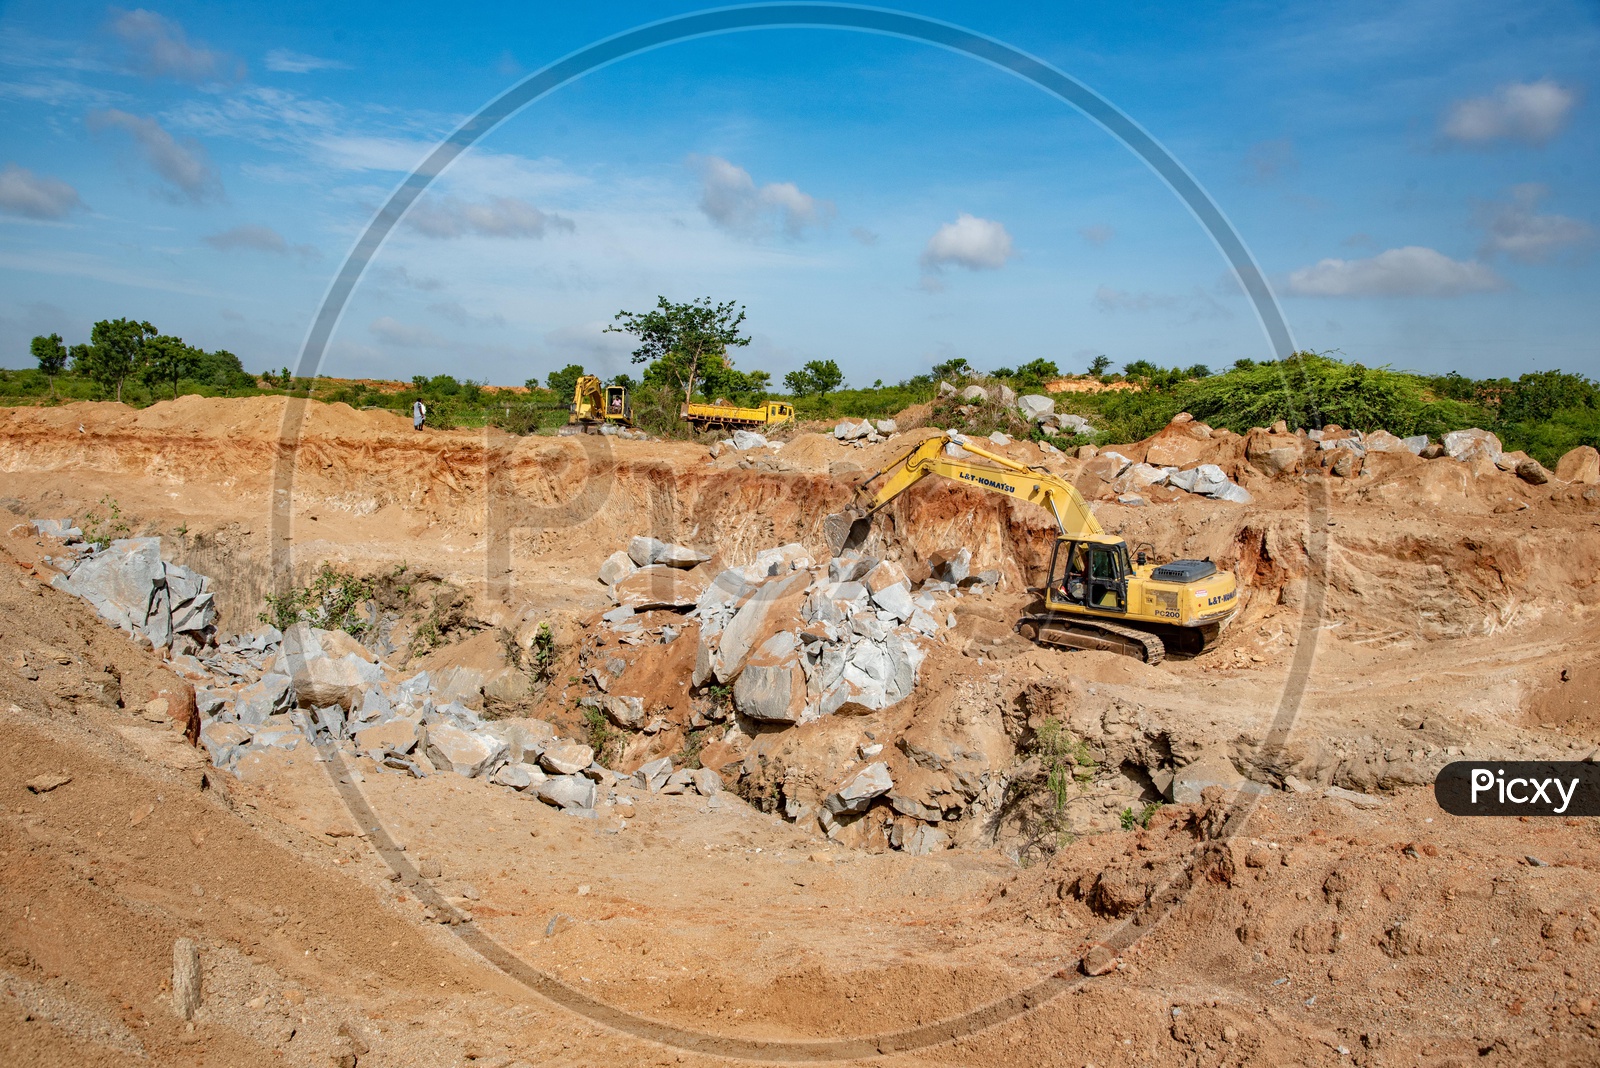 Excavation works at a village near Peddagudem Village